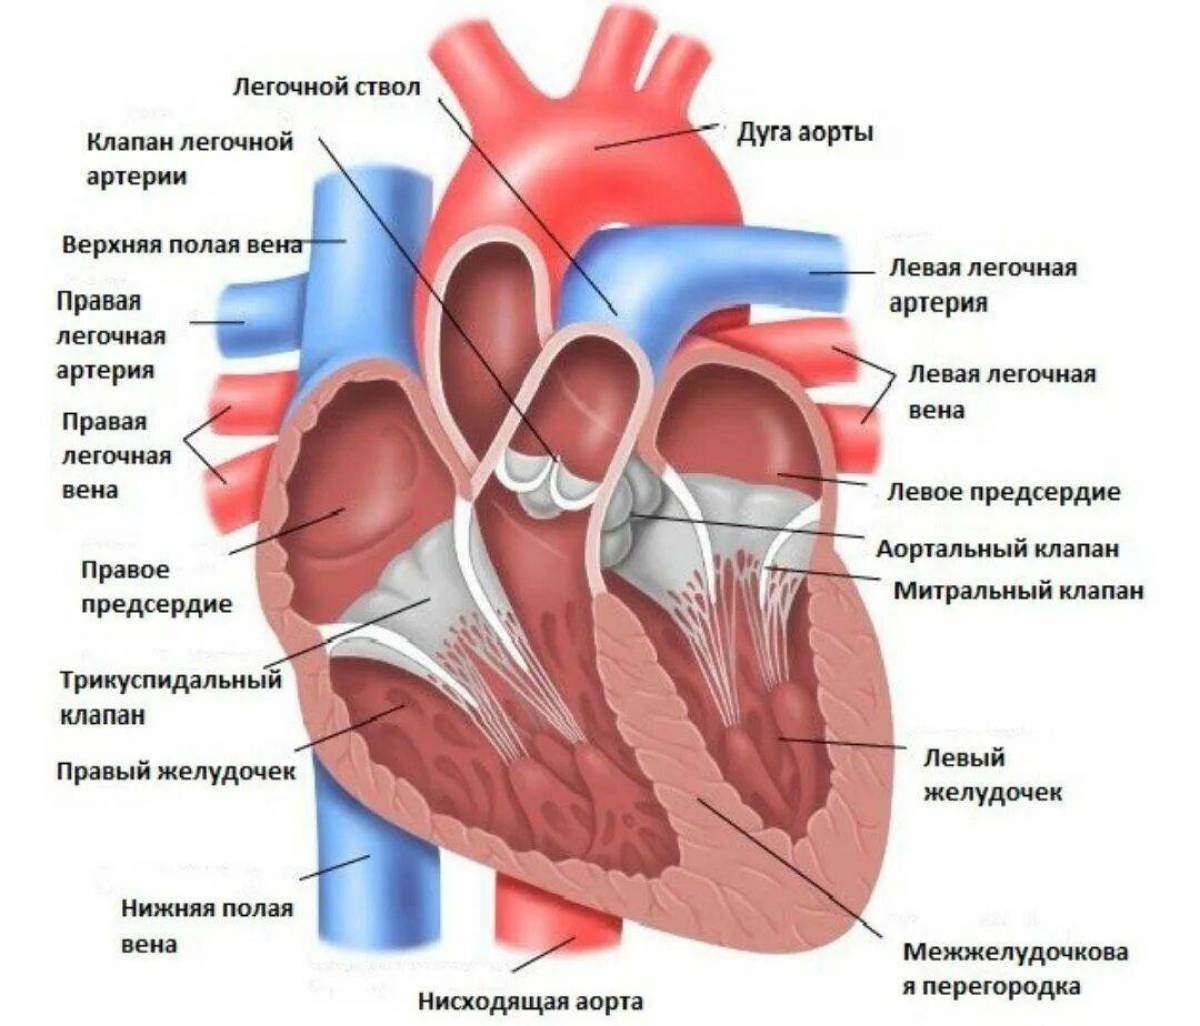 От левого предсердия к легким. Строение сердца анатомия клапан аорты. Полулунный клапан легочного ствола. Отверстия аорты и легочного ствола. Строение левого желудочка сердца анатомия.